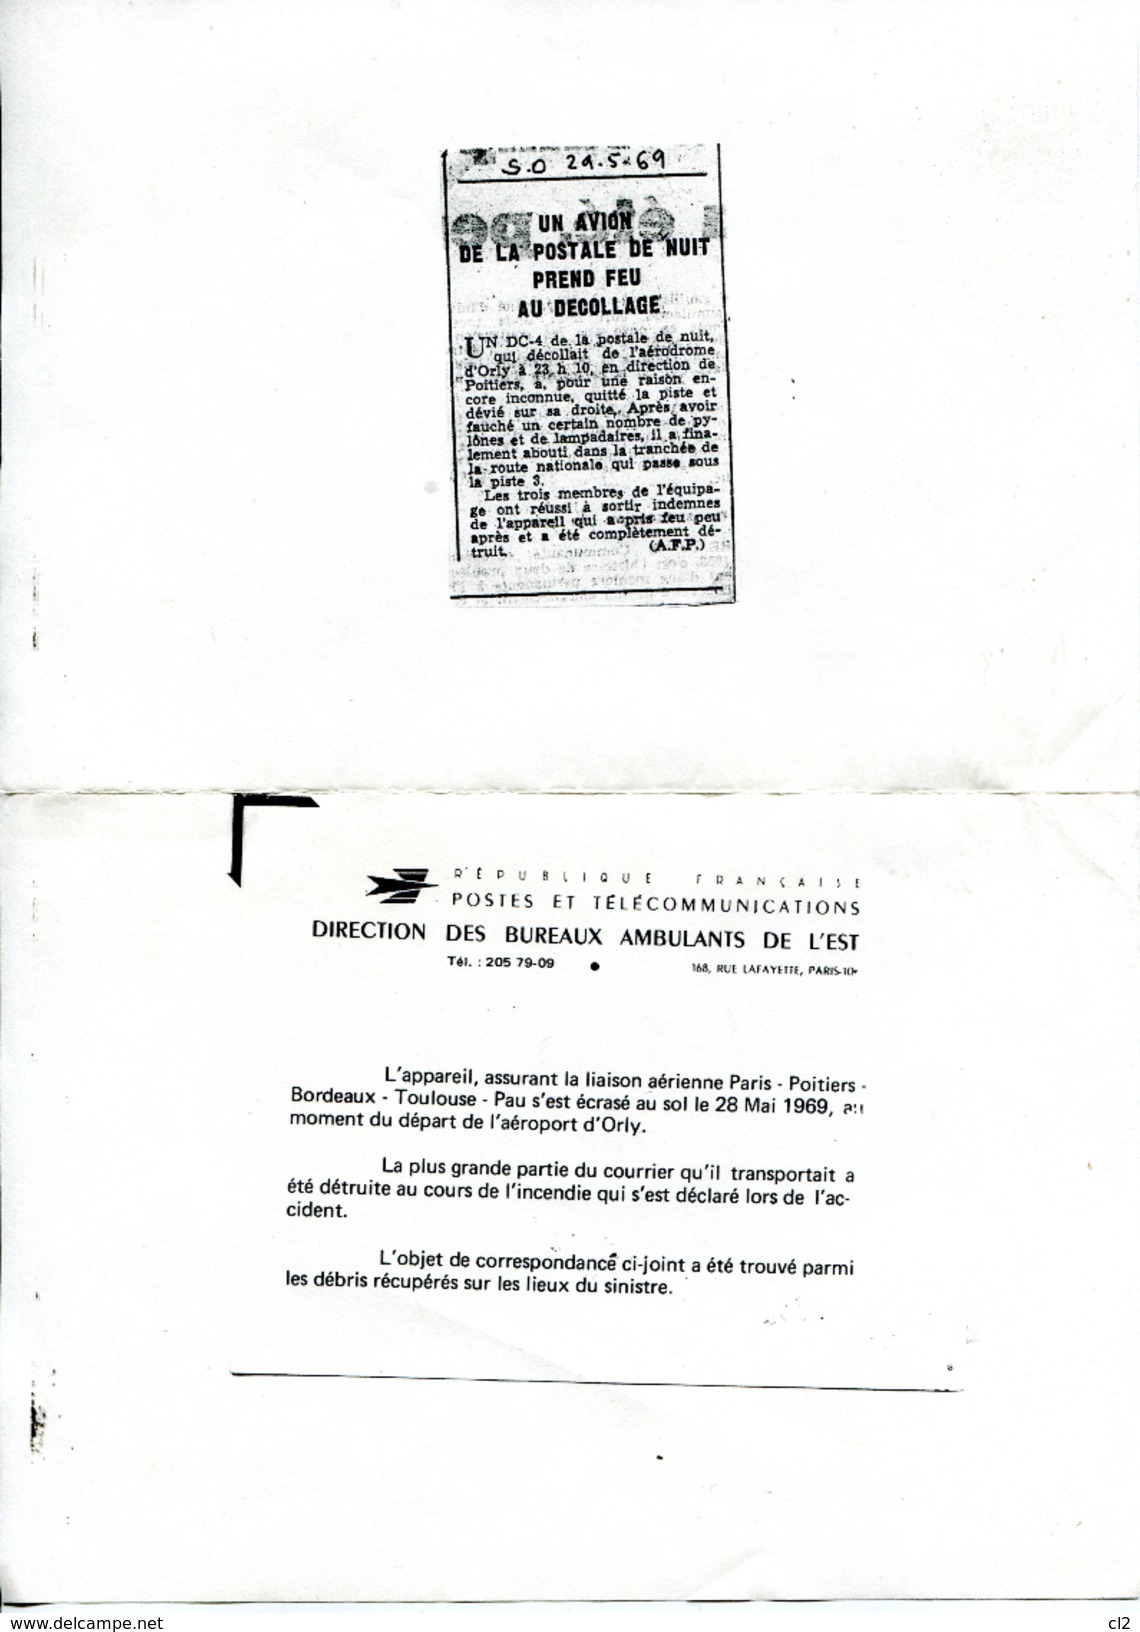 # - 28 Mai 1969 - ORLY - Accident D'un DC4 De La Postale - Courrier Ré-acheminé Par La Poste - Lettere Accidentate